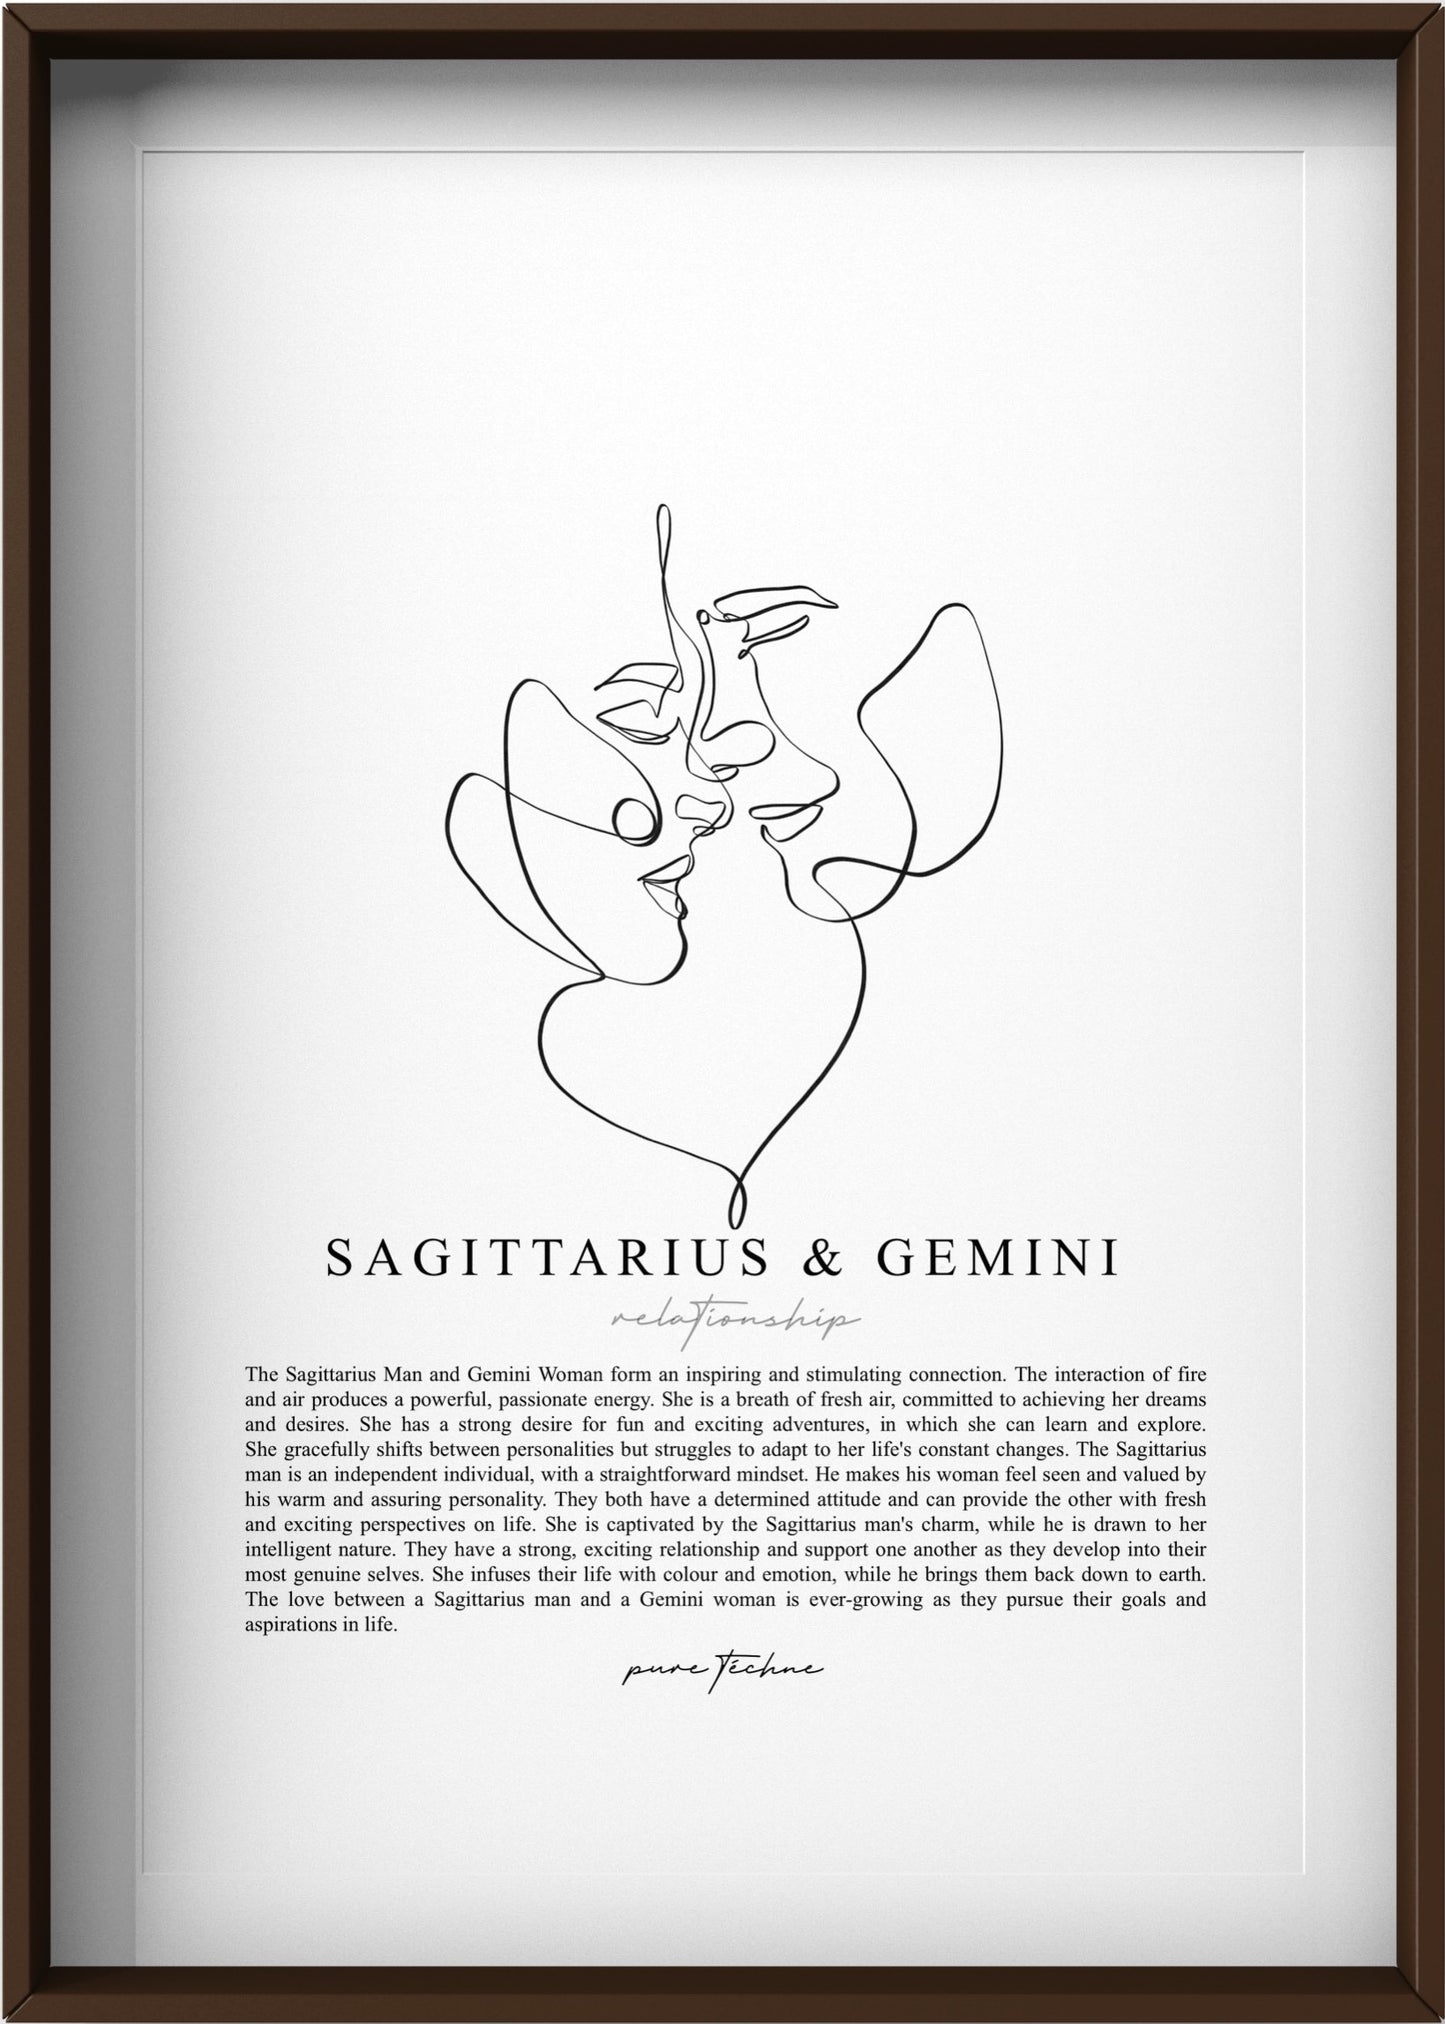 Sagittarius Man & Gemini Woman